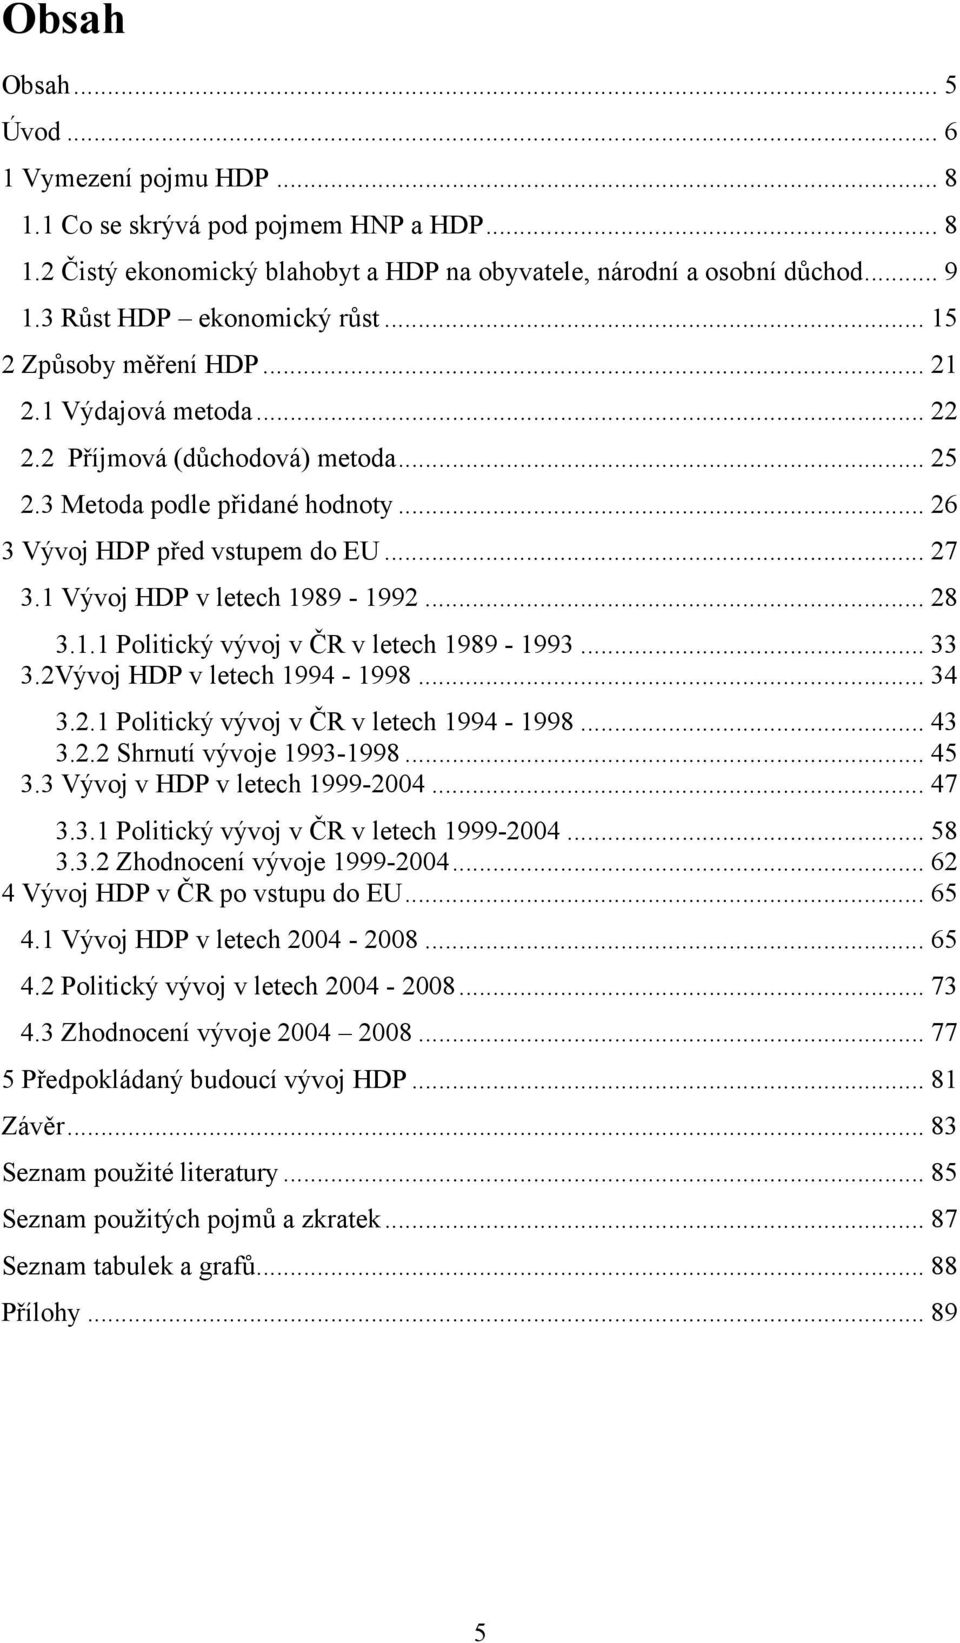 1 Vývoj HDP v letech 1989-1992... 28 3.1.1 Politický vývoj v ČR v letech 1989-1993... 33 3.2Vývoj HDP v letech 1994-1998... 34 3.2.1 Politický vývoj v ČR v letech 1994-1998... 43 3.2.2 Shrnutí vývoje 1993-1998.